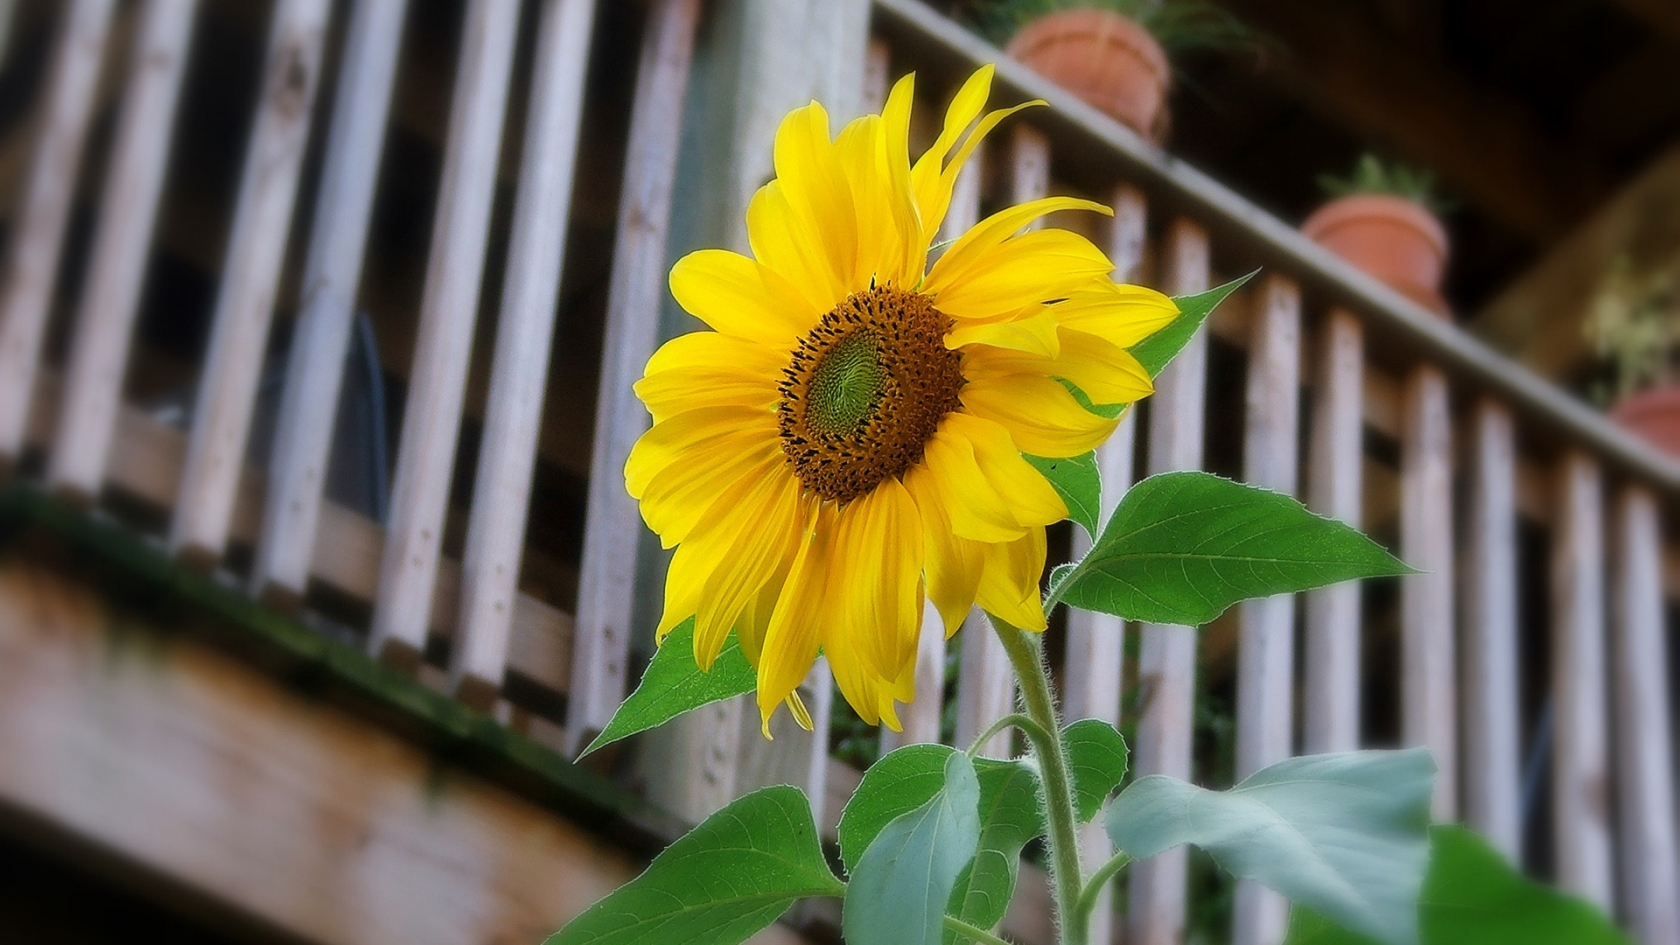 Sunflower for 1680 x 945 HDTV resolution